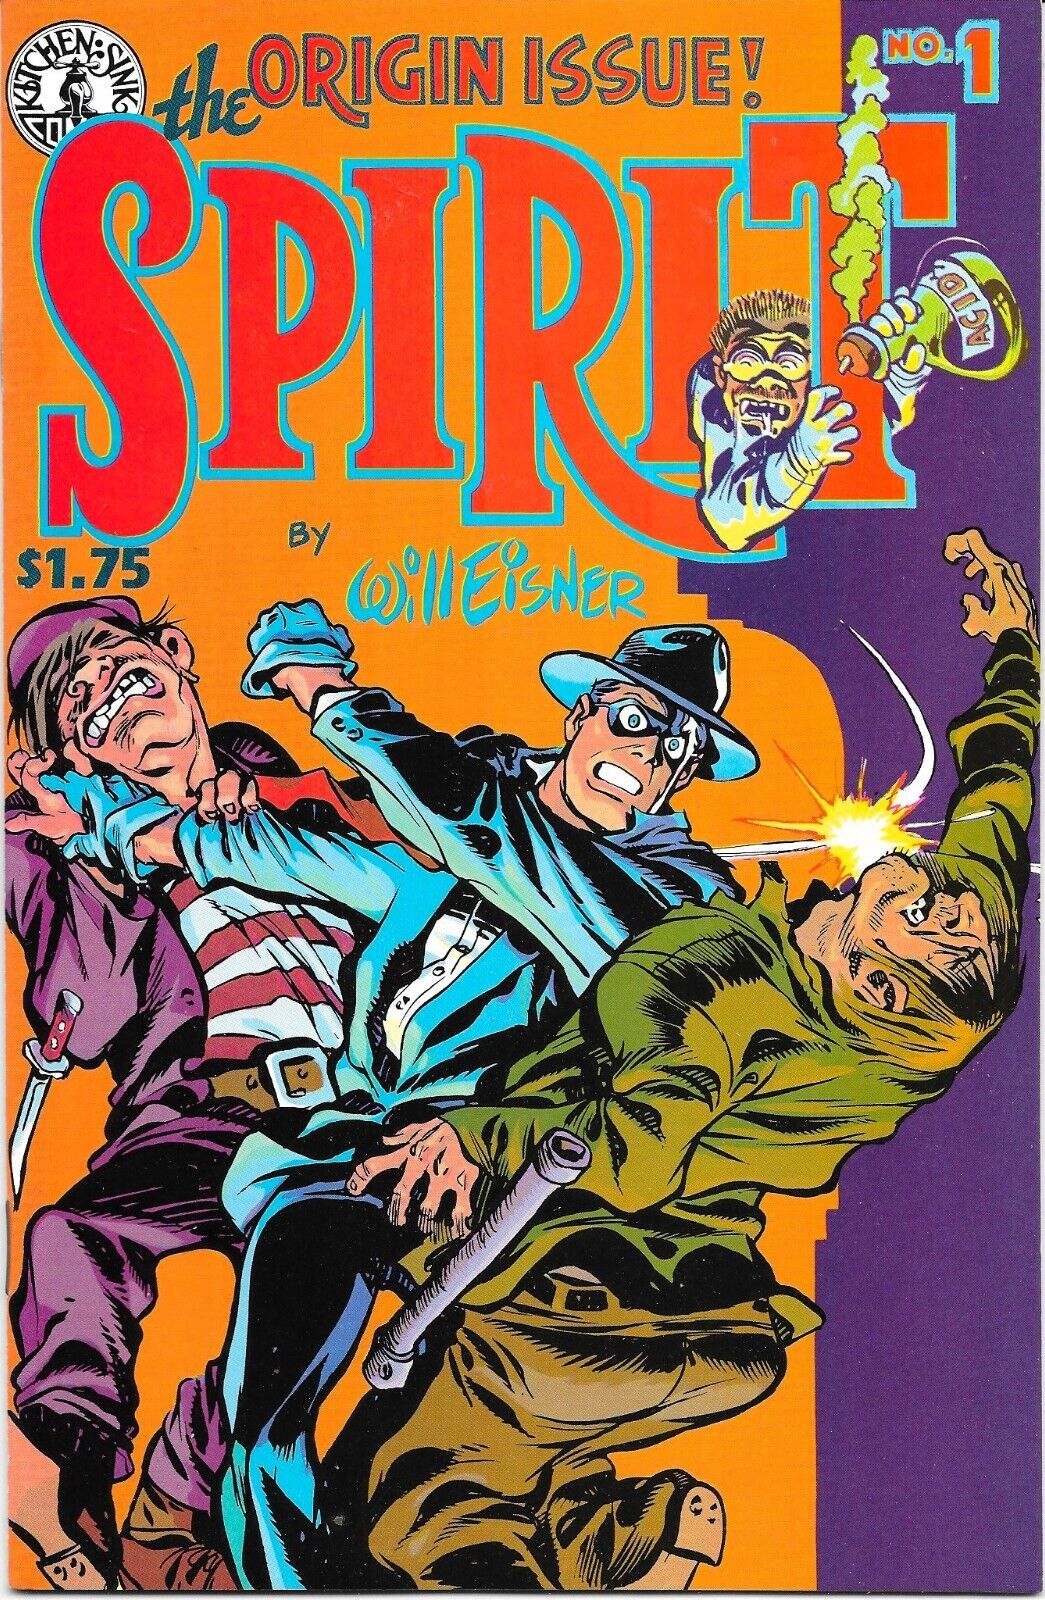 THE SPIRIT #1 (October 1983) Kitchen Sink Press-Origin Issue-Will Eisner VF-NM